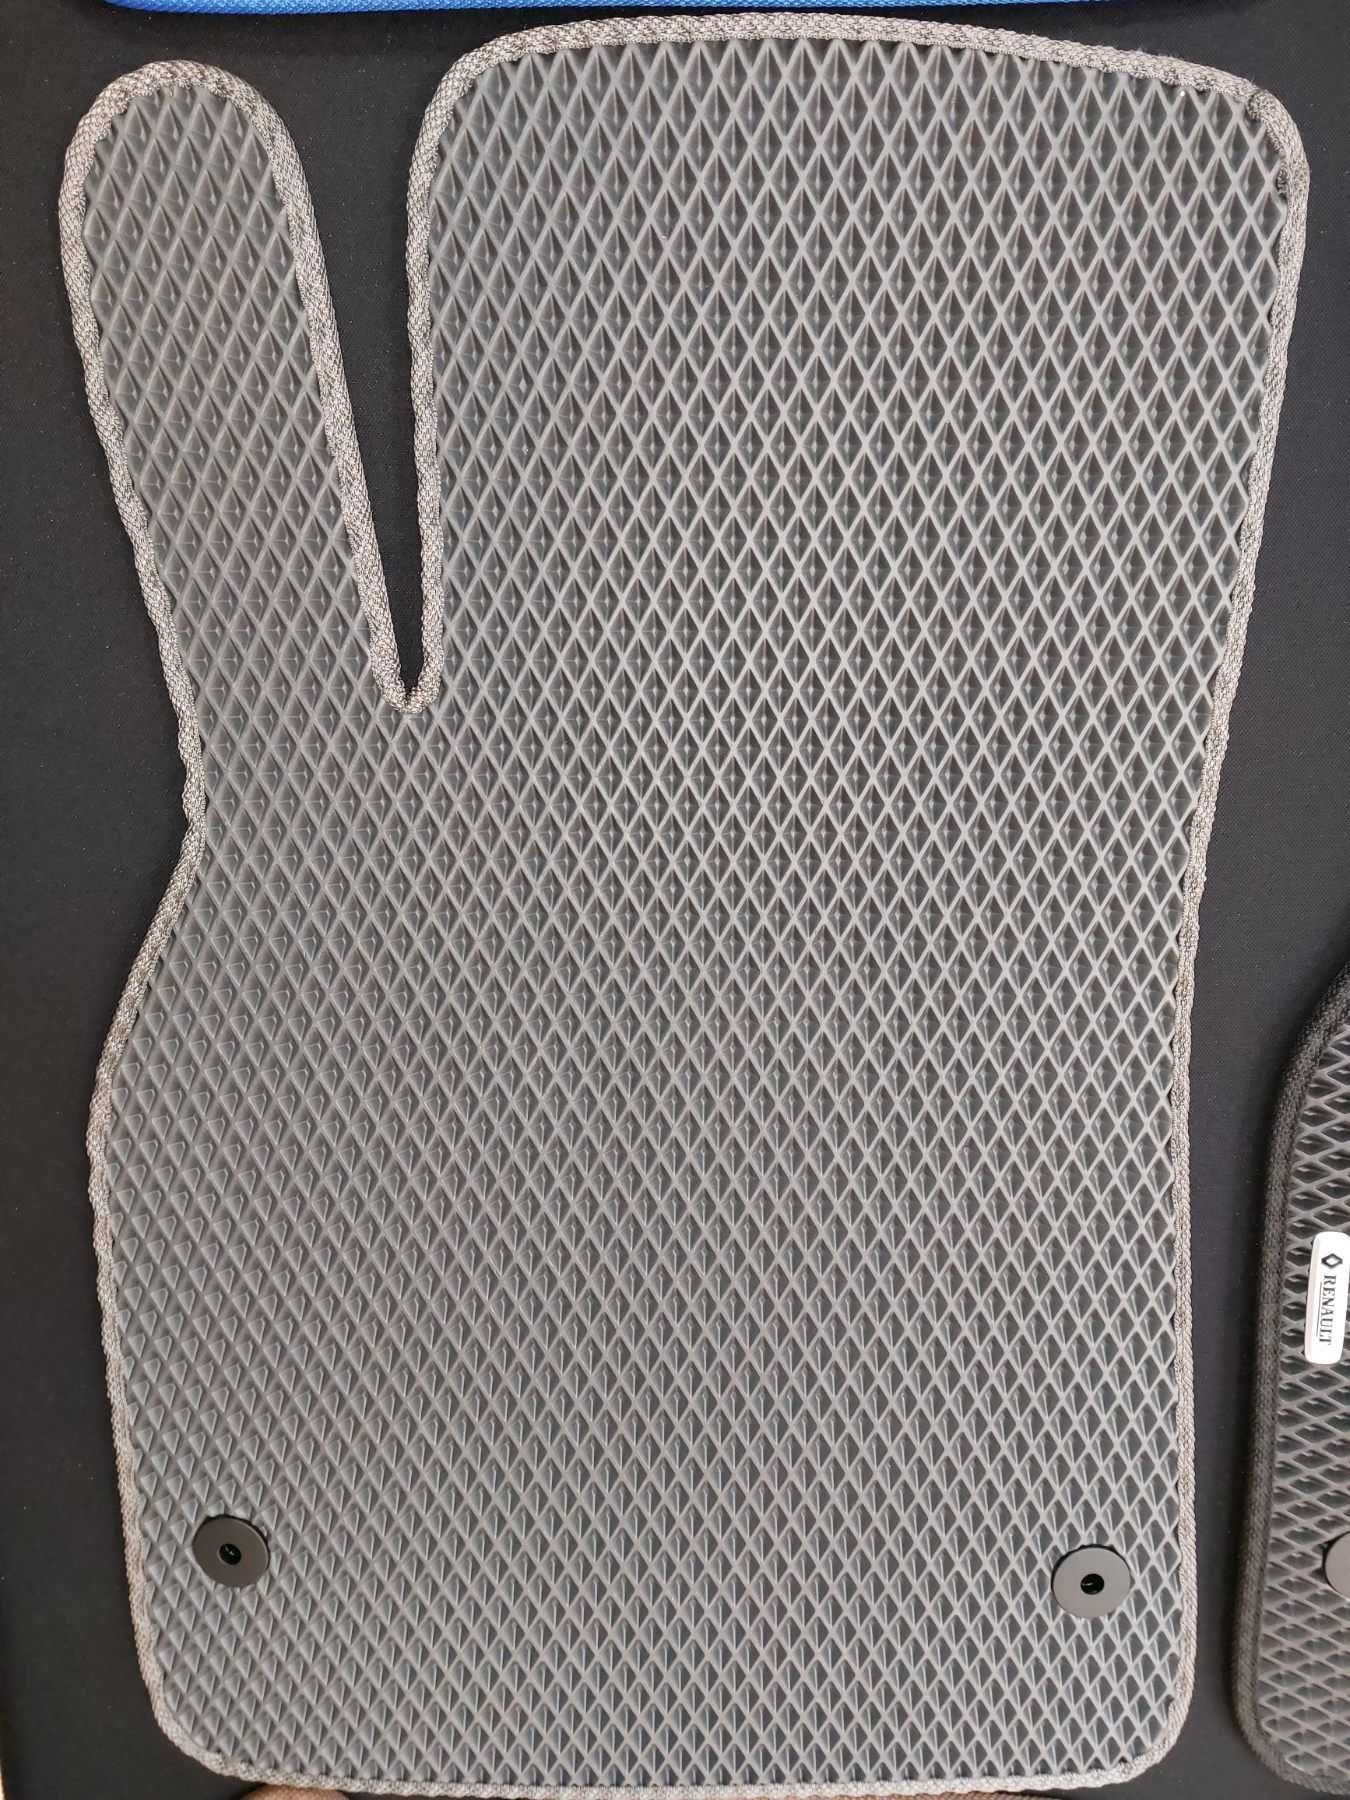 Авто коврики EVA ЕВА для Мазда Mazda CX5 CX7 CX9 M3 M6 в салон